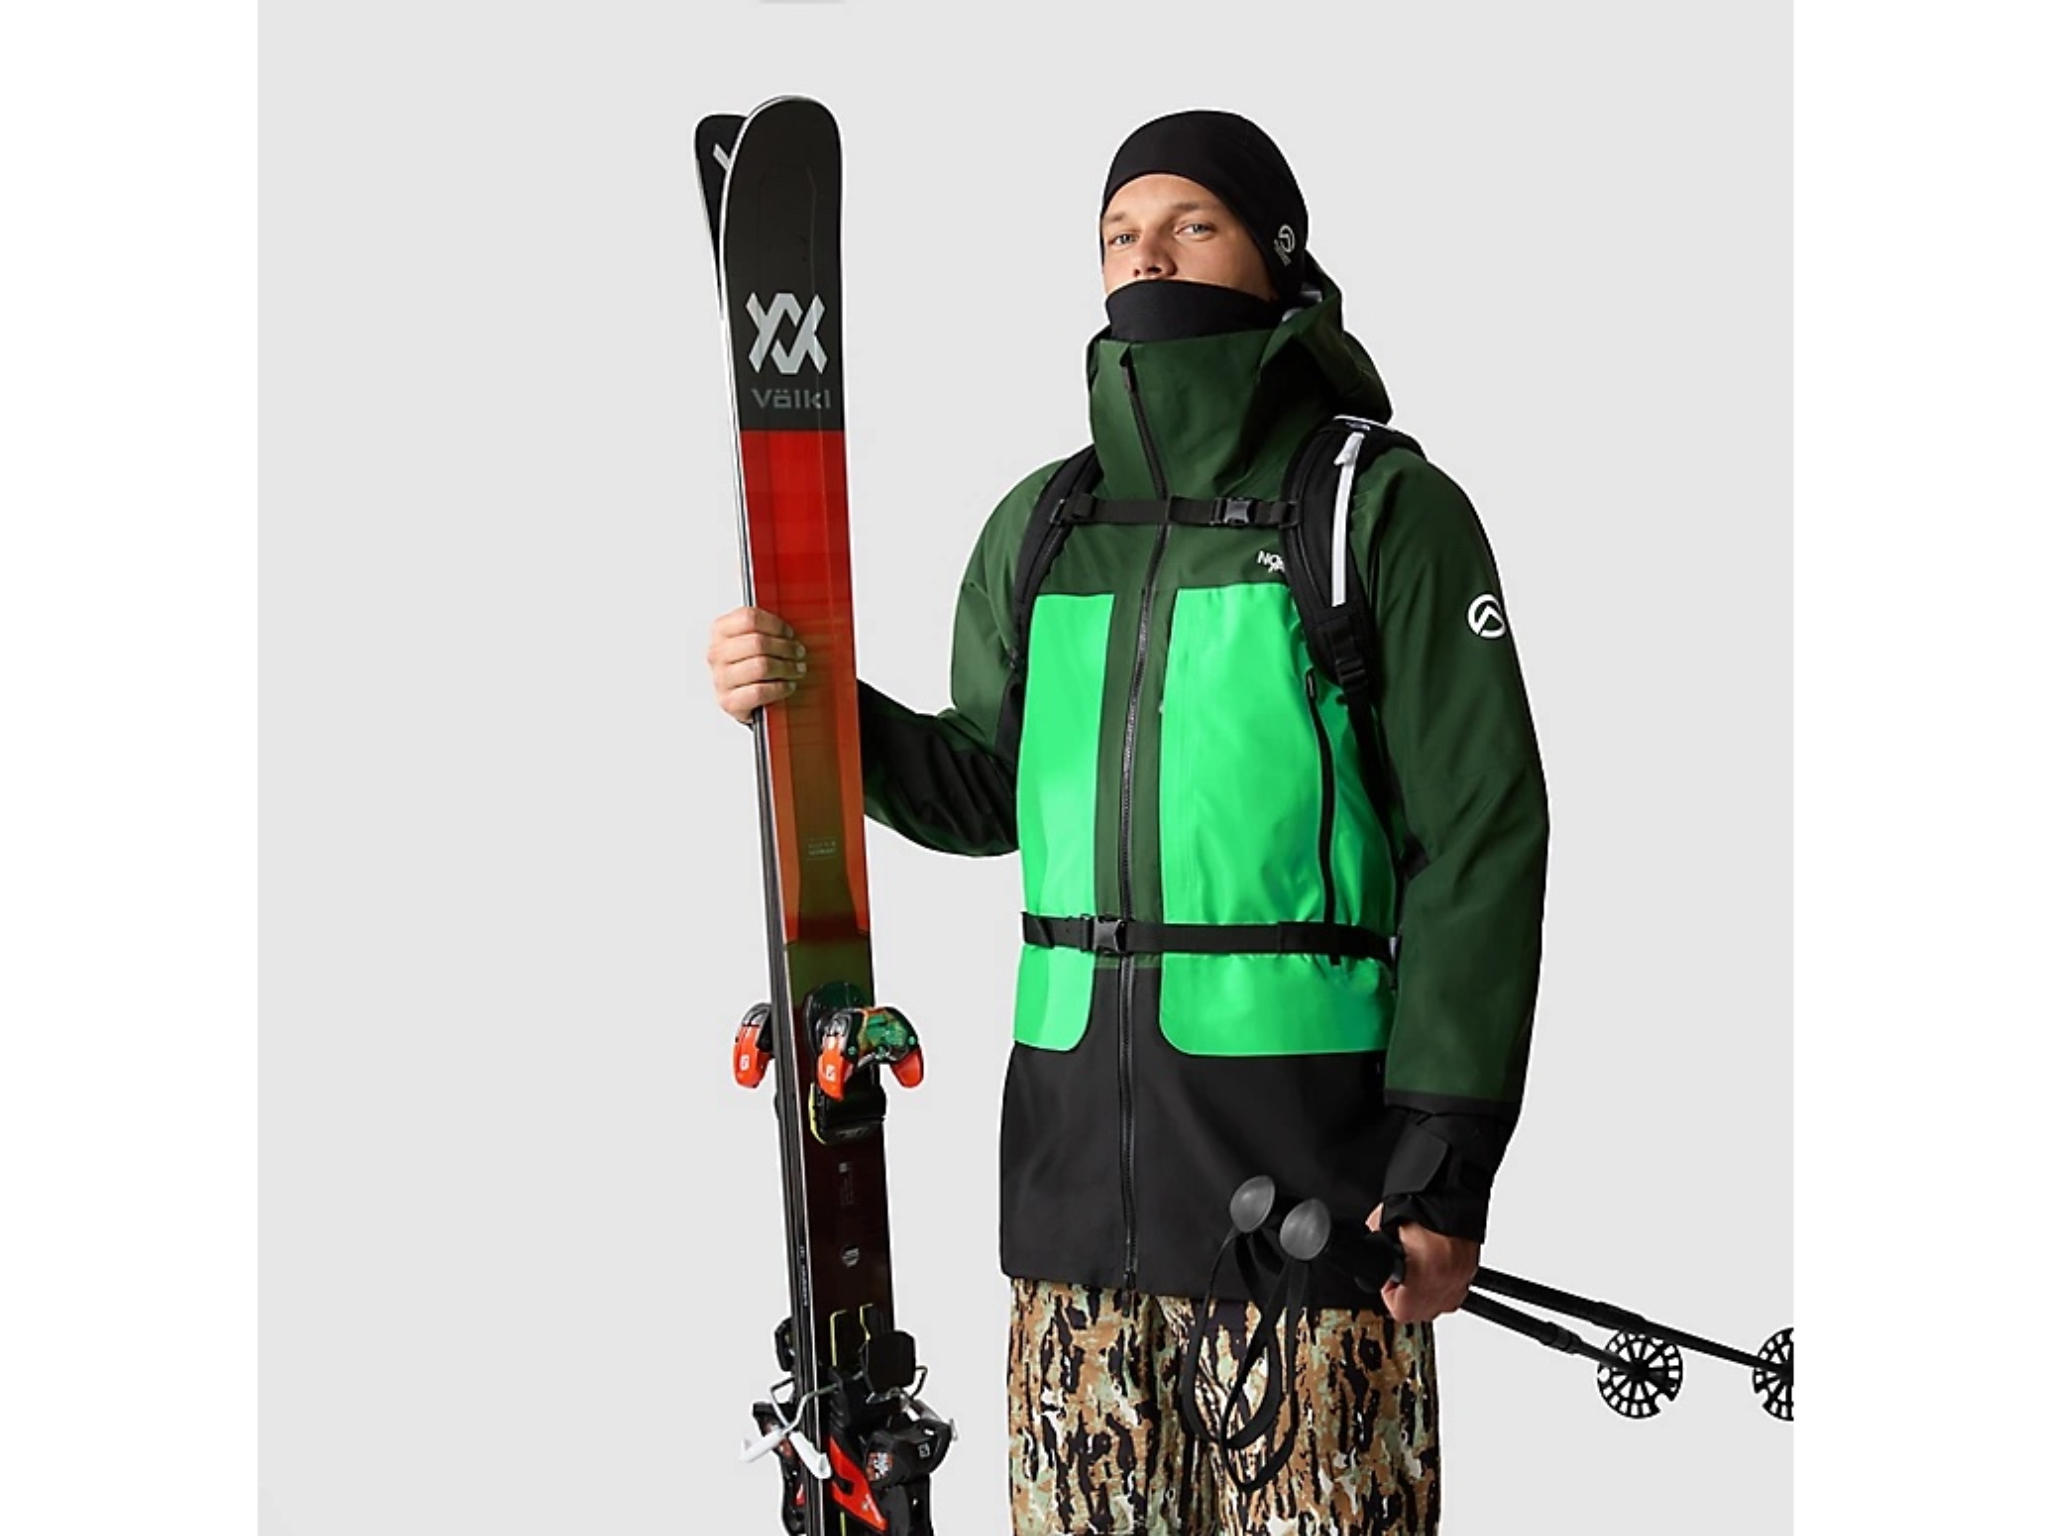 North-face-mens-ski-jacket-indybest